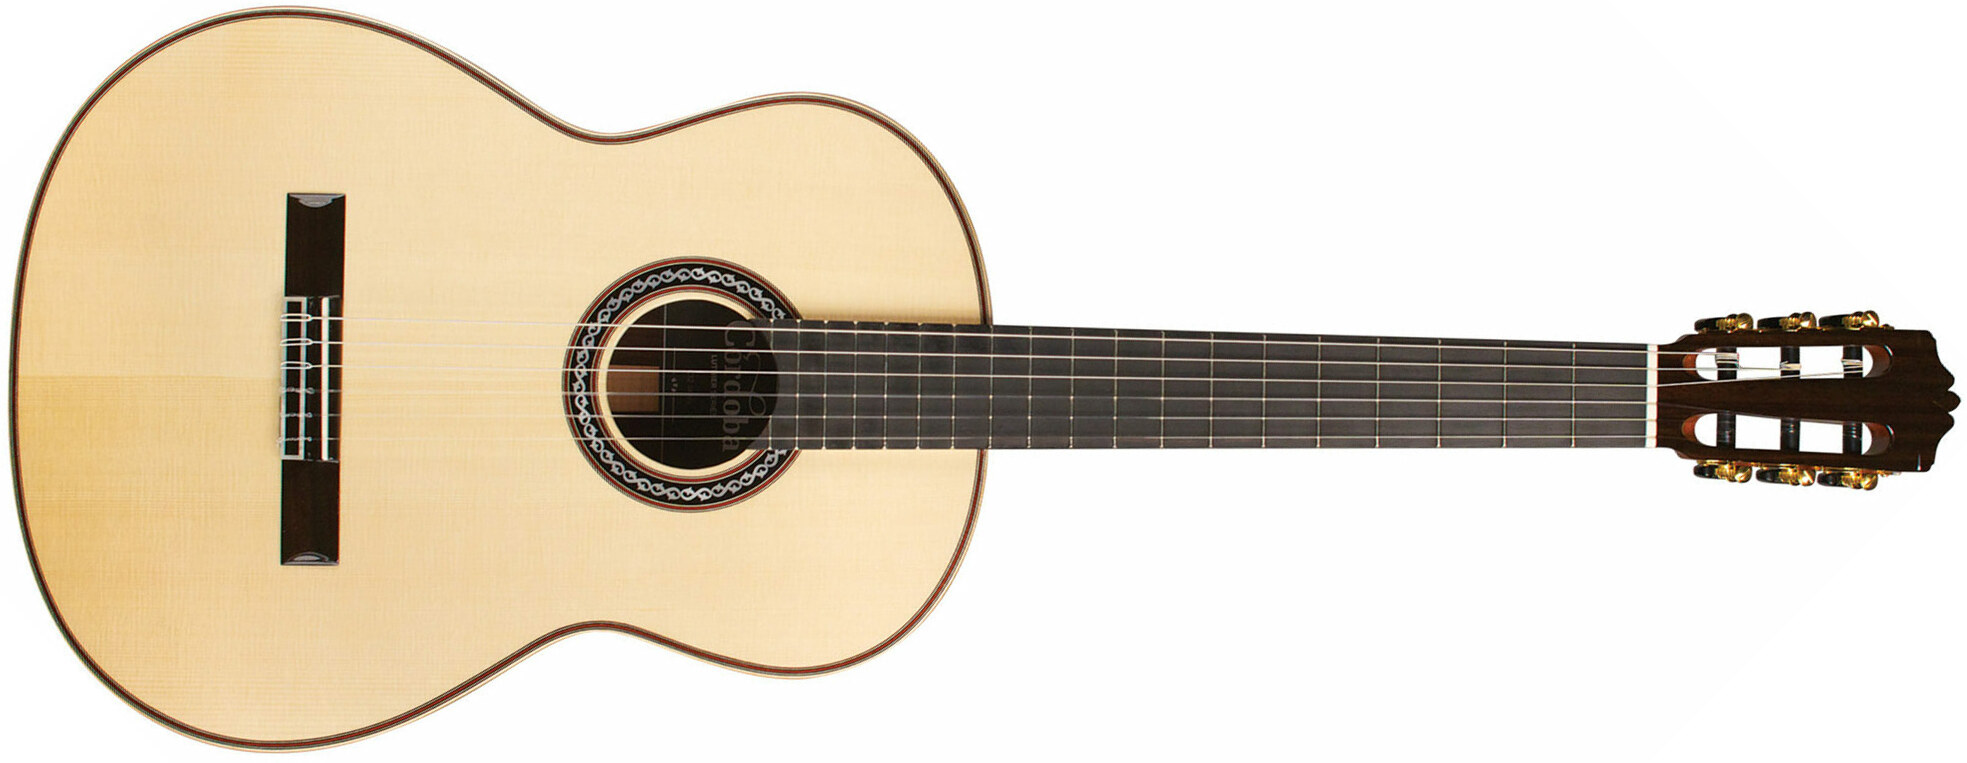 Cordoba C12 Sp Luthier 4/4 Epicea Palissandre Eb - Naturel - Classical guitar 4/4 size - Main picture